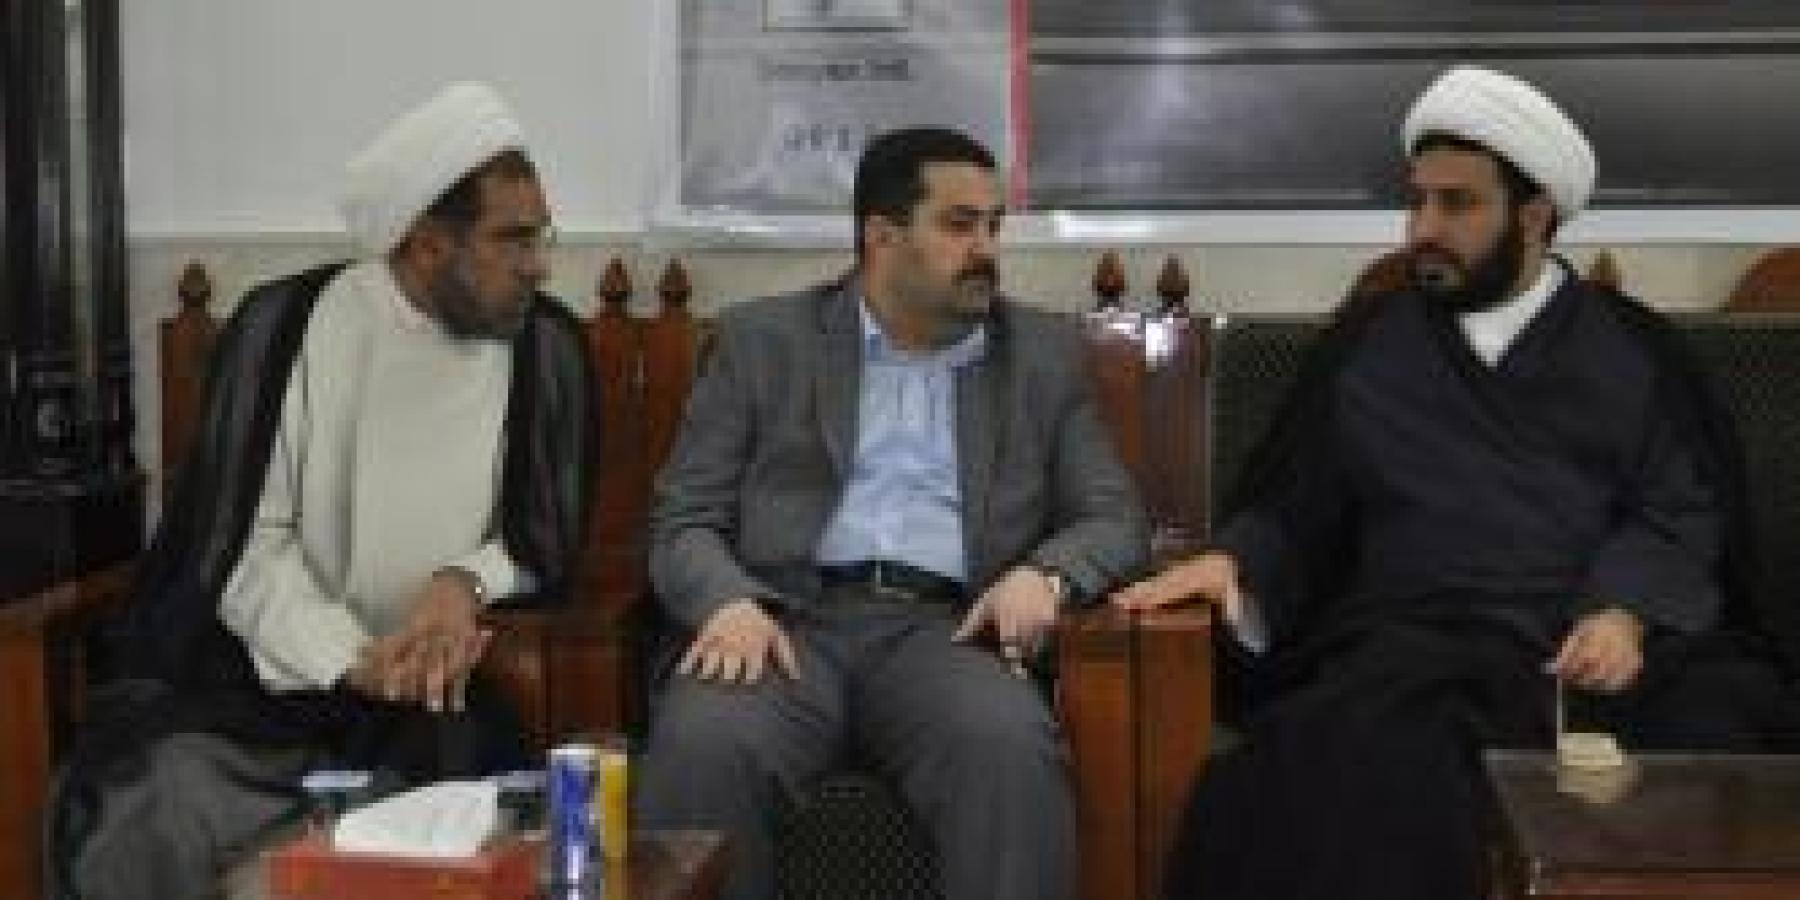 وزير حقوق الإنسان ونائب رئيس ديوان الوقف الشيعي يتشرفان بزيارة العتبة المقدسة